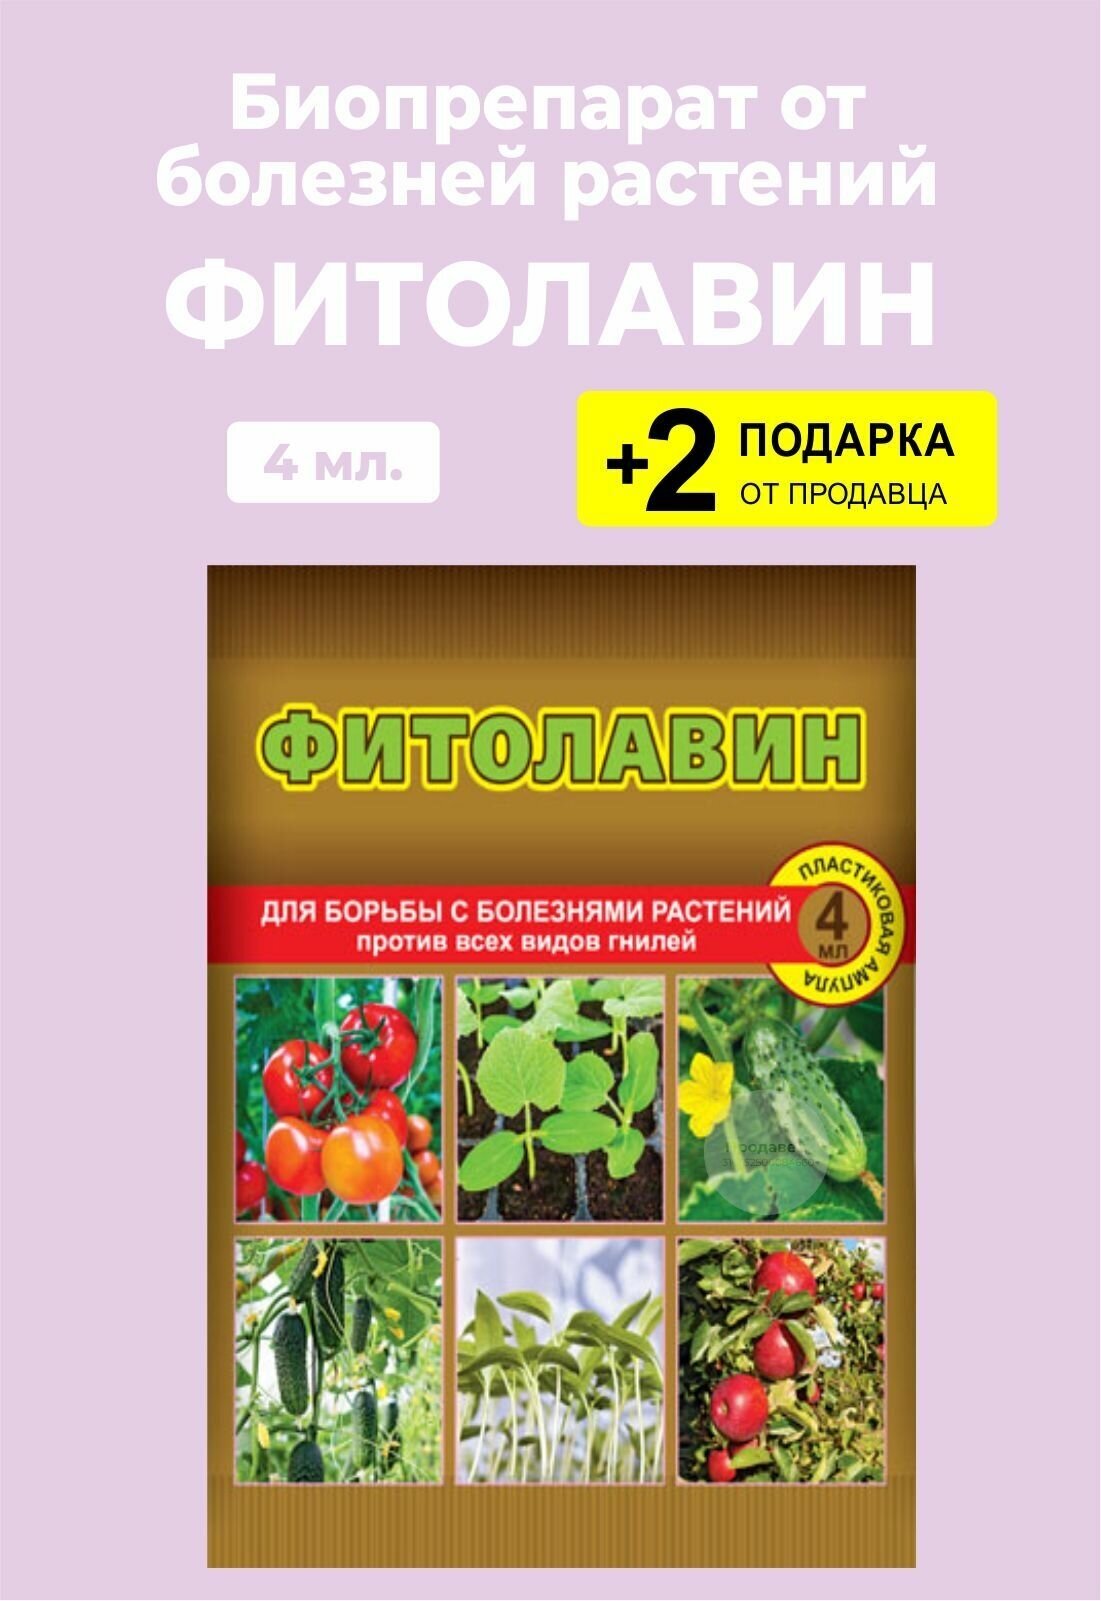 Биопрепарат "Фитолавин" для защиты растений, 4 мл. + 2 Подарка